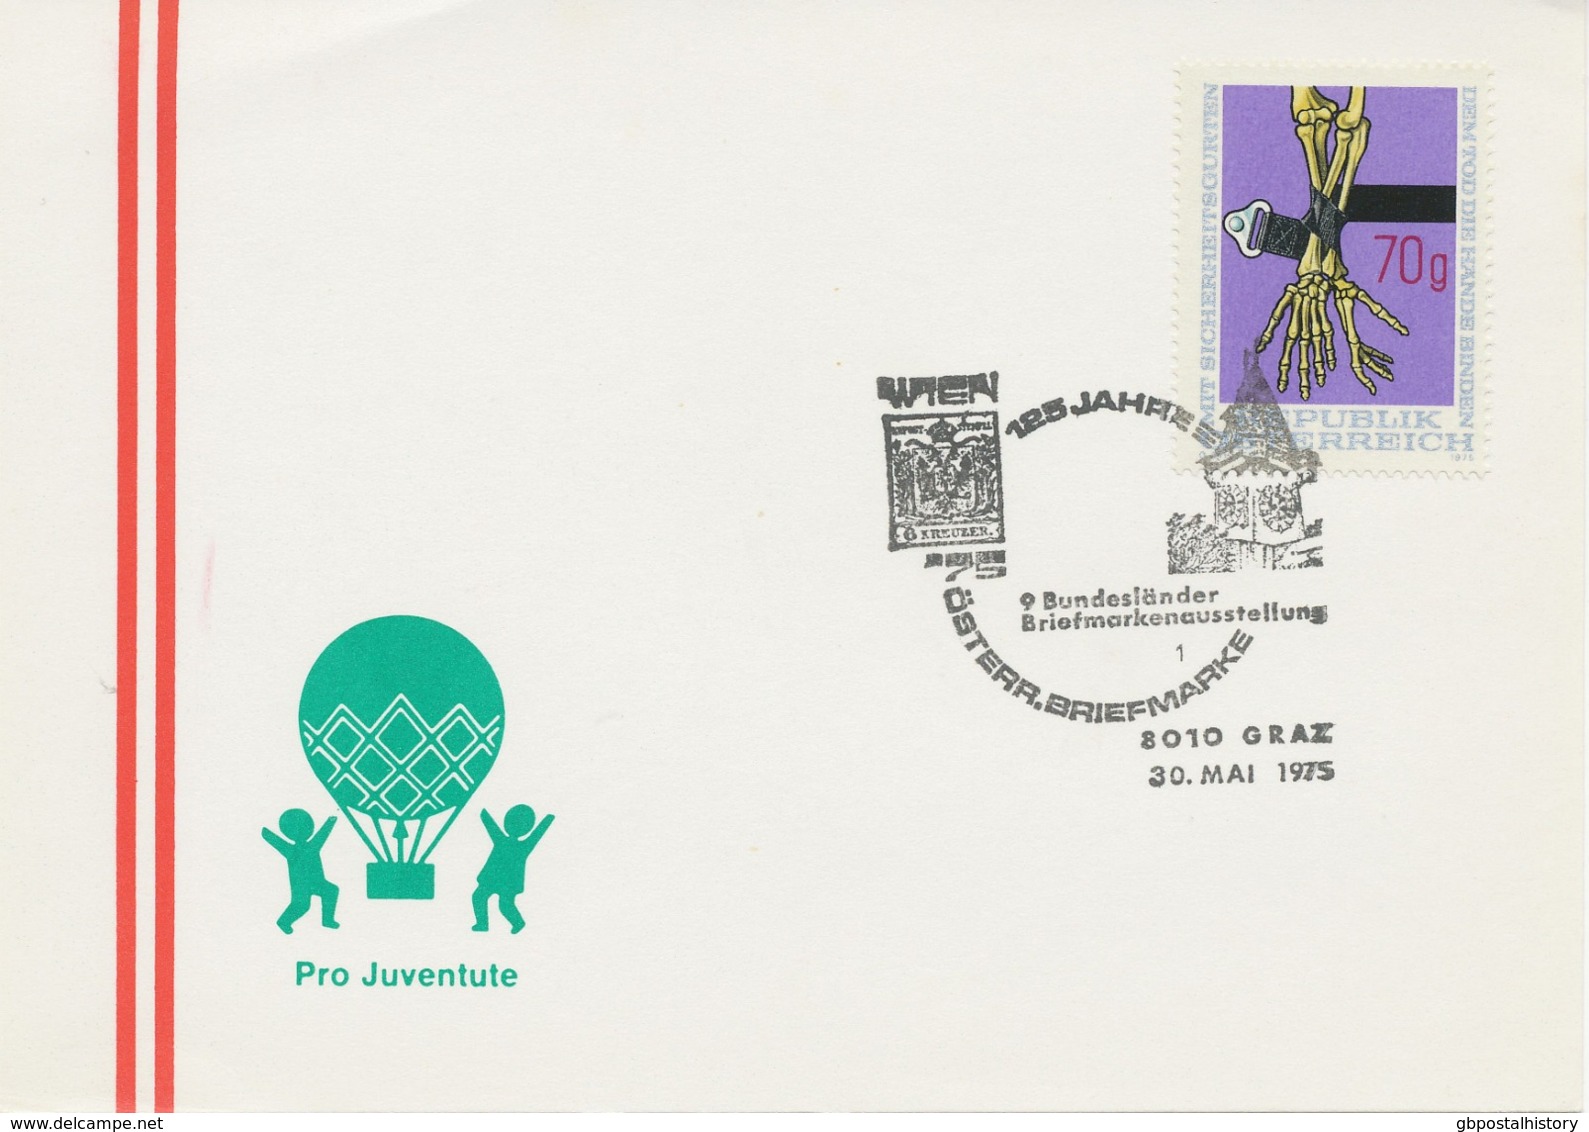 ÖSTERREICH 1975 8010 GRAZ 125 Jahre Österr. Briefmarke - 9. Bundesländer Briefmarkenausstellung - Frankeermachines (EMA)